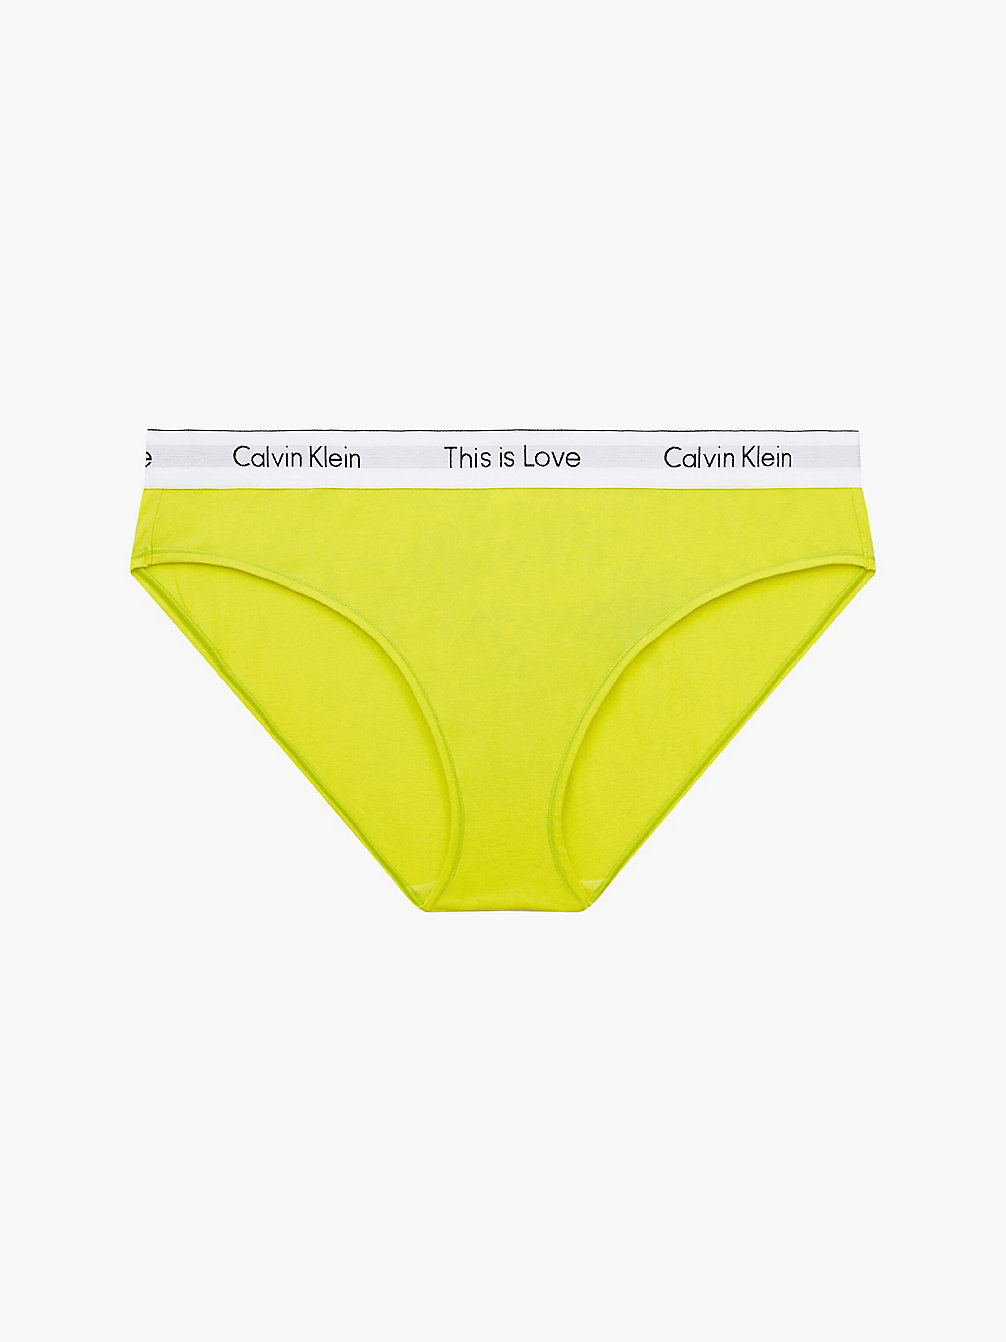 CITRINA Plus Size Bikini Brief - Pride undefined women Calvin Klein